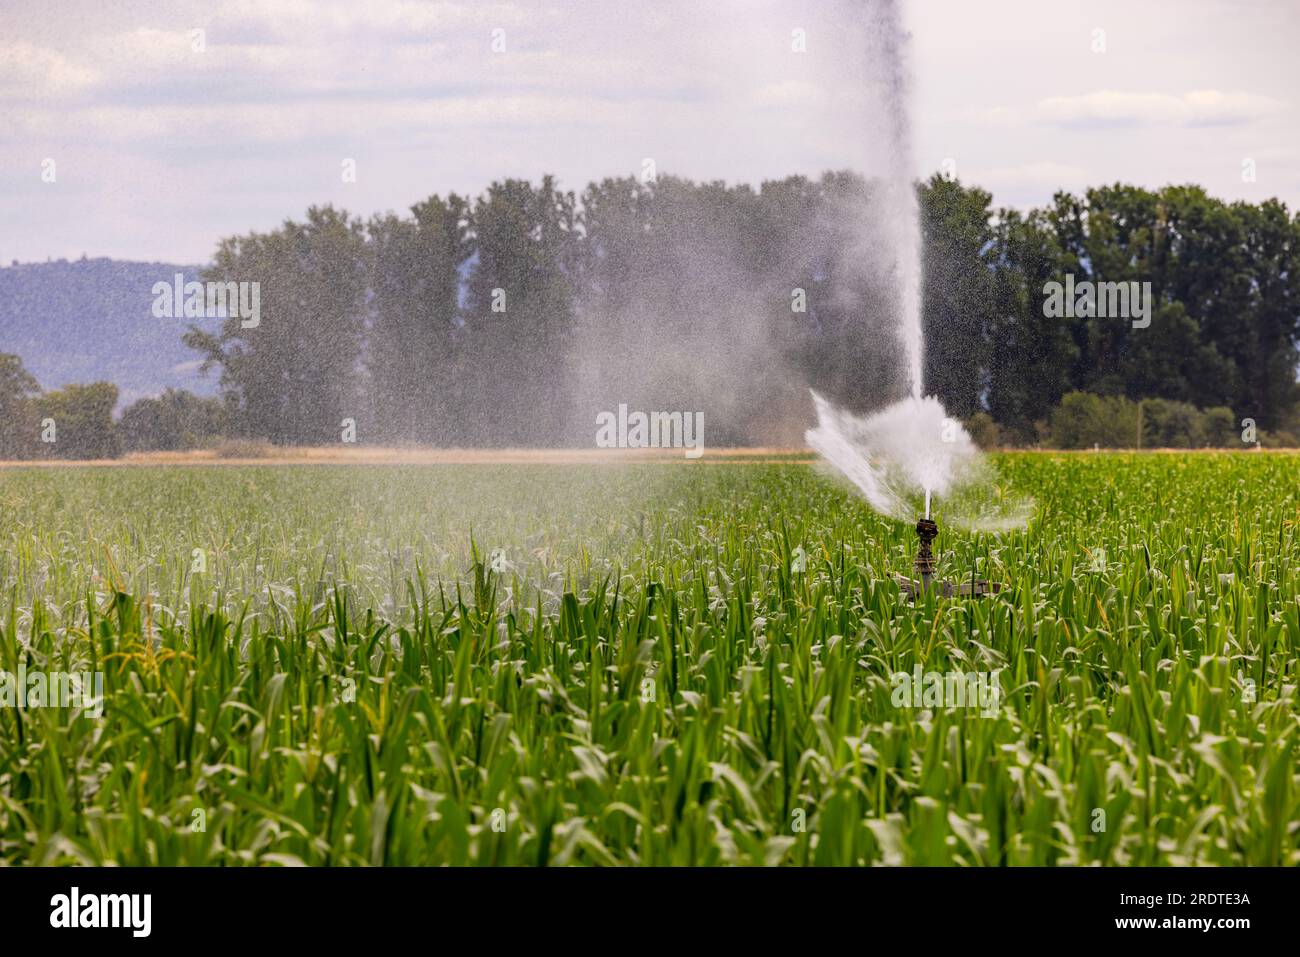 Arroseur d'une irrigation dans un champ agricole avec du maïs en été, Allemagne Banque D'Images